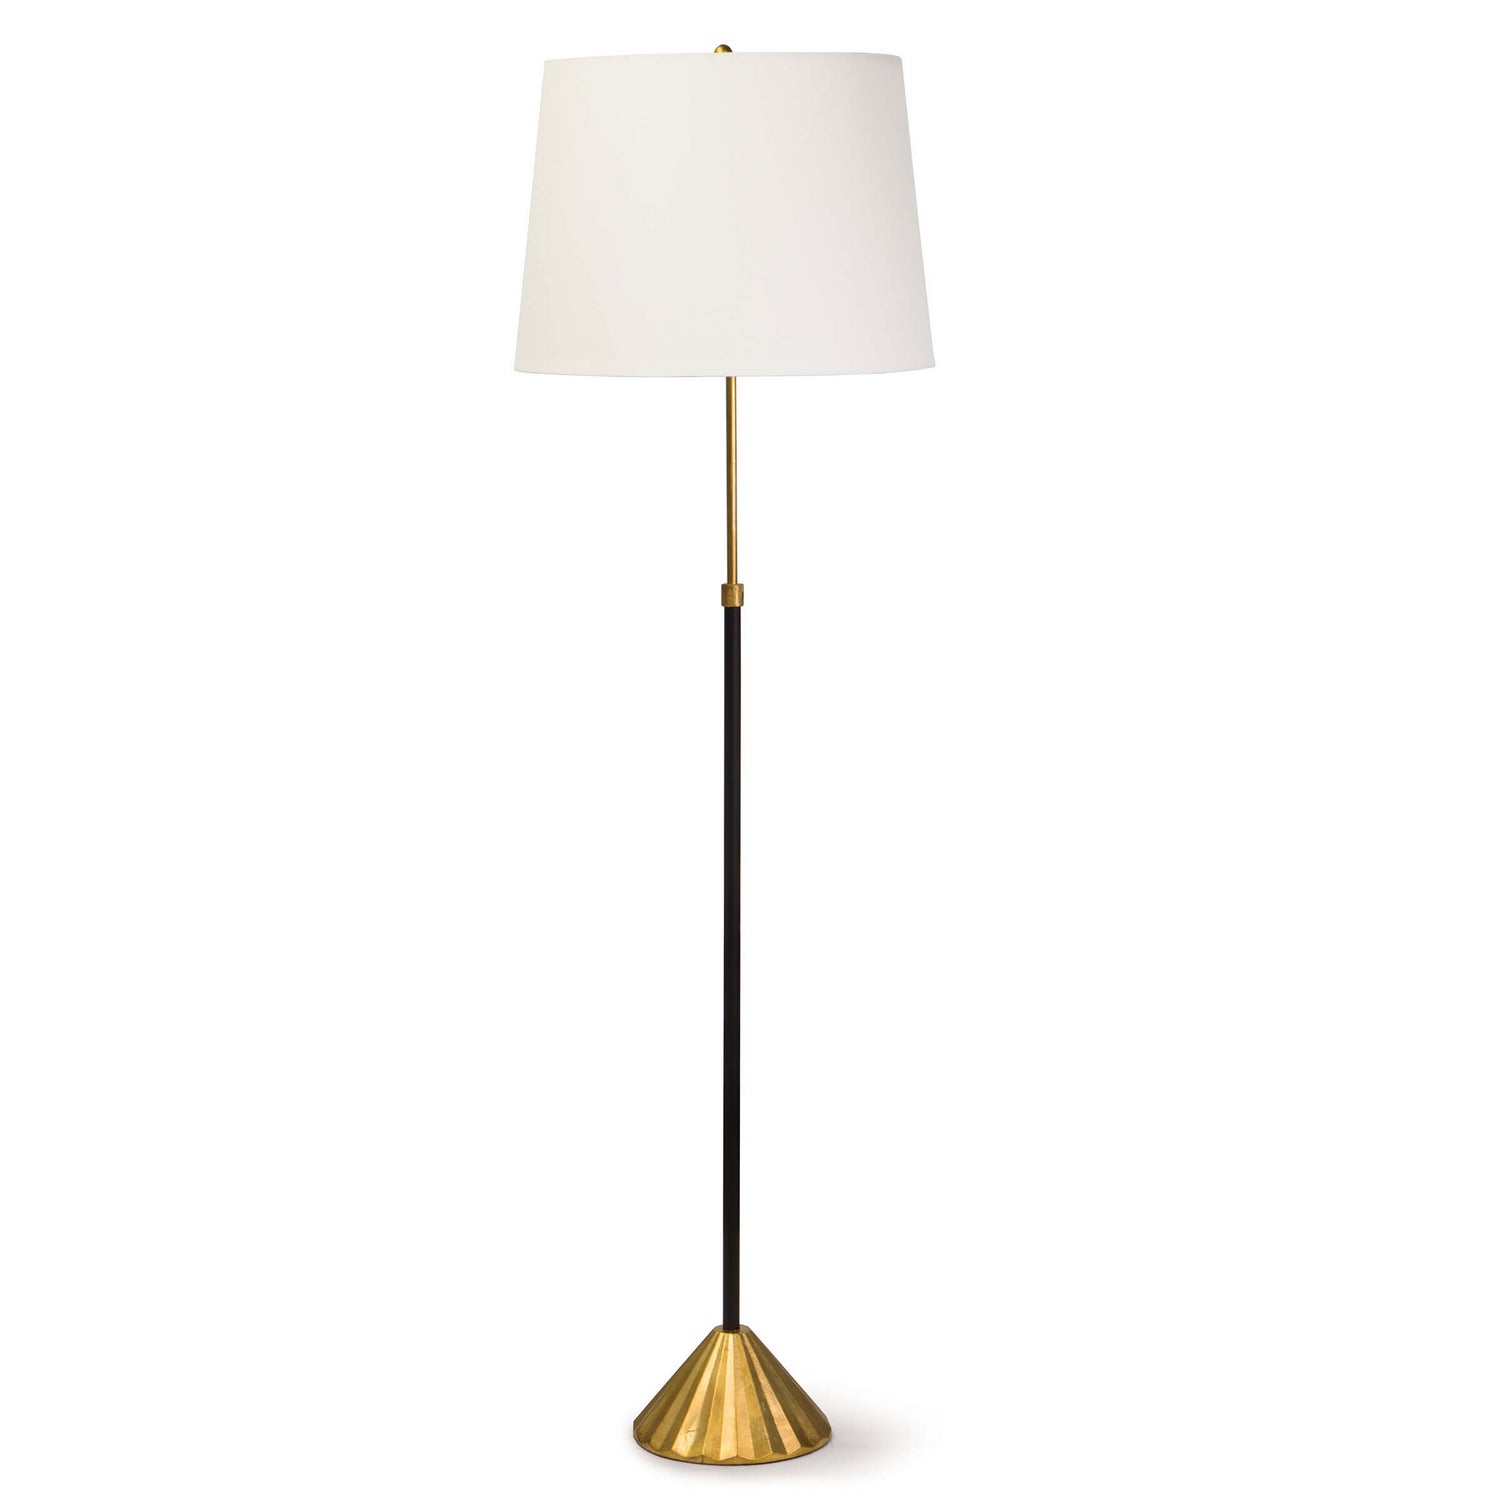 Regina Andrew - 14-1033 - One Light Floor Lamp - Parasol - Gold Leaf